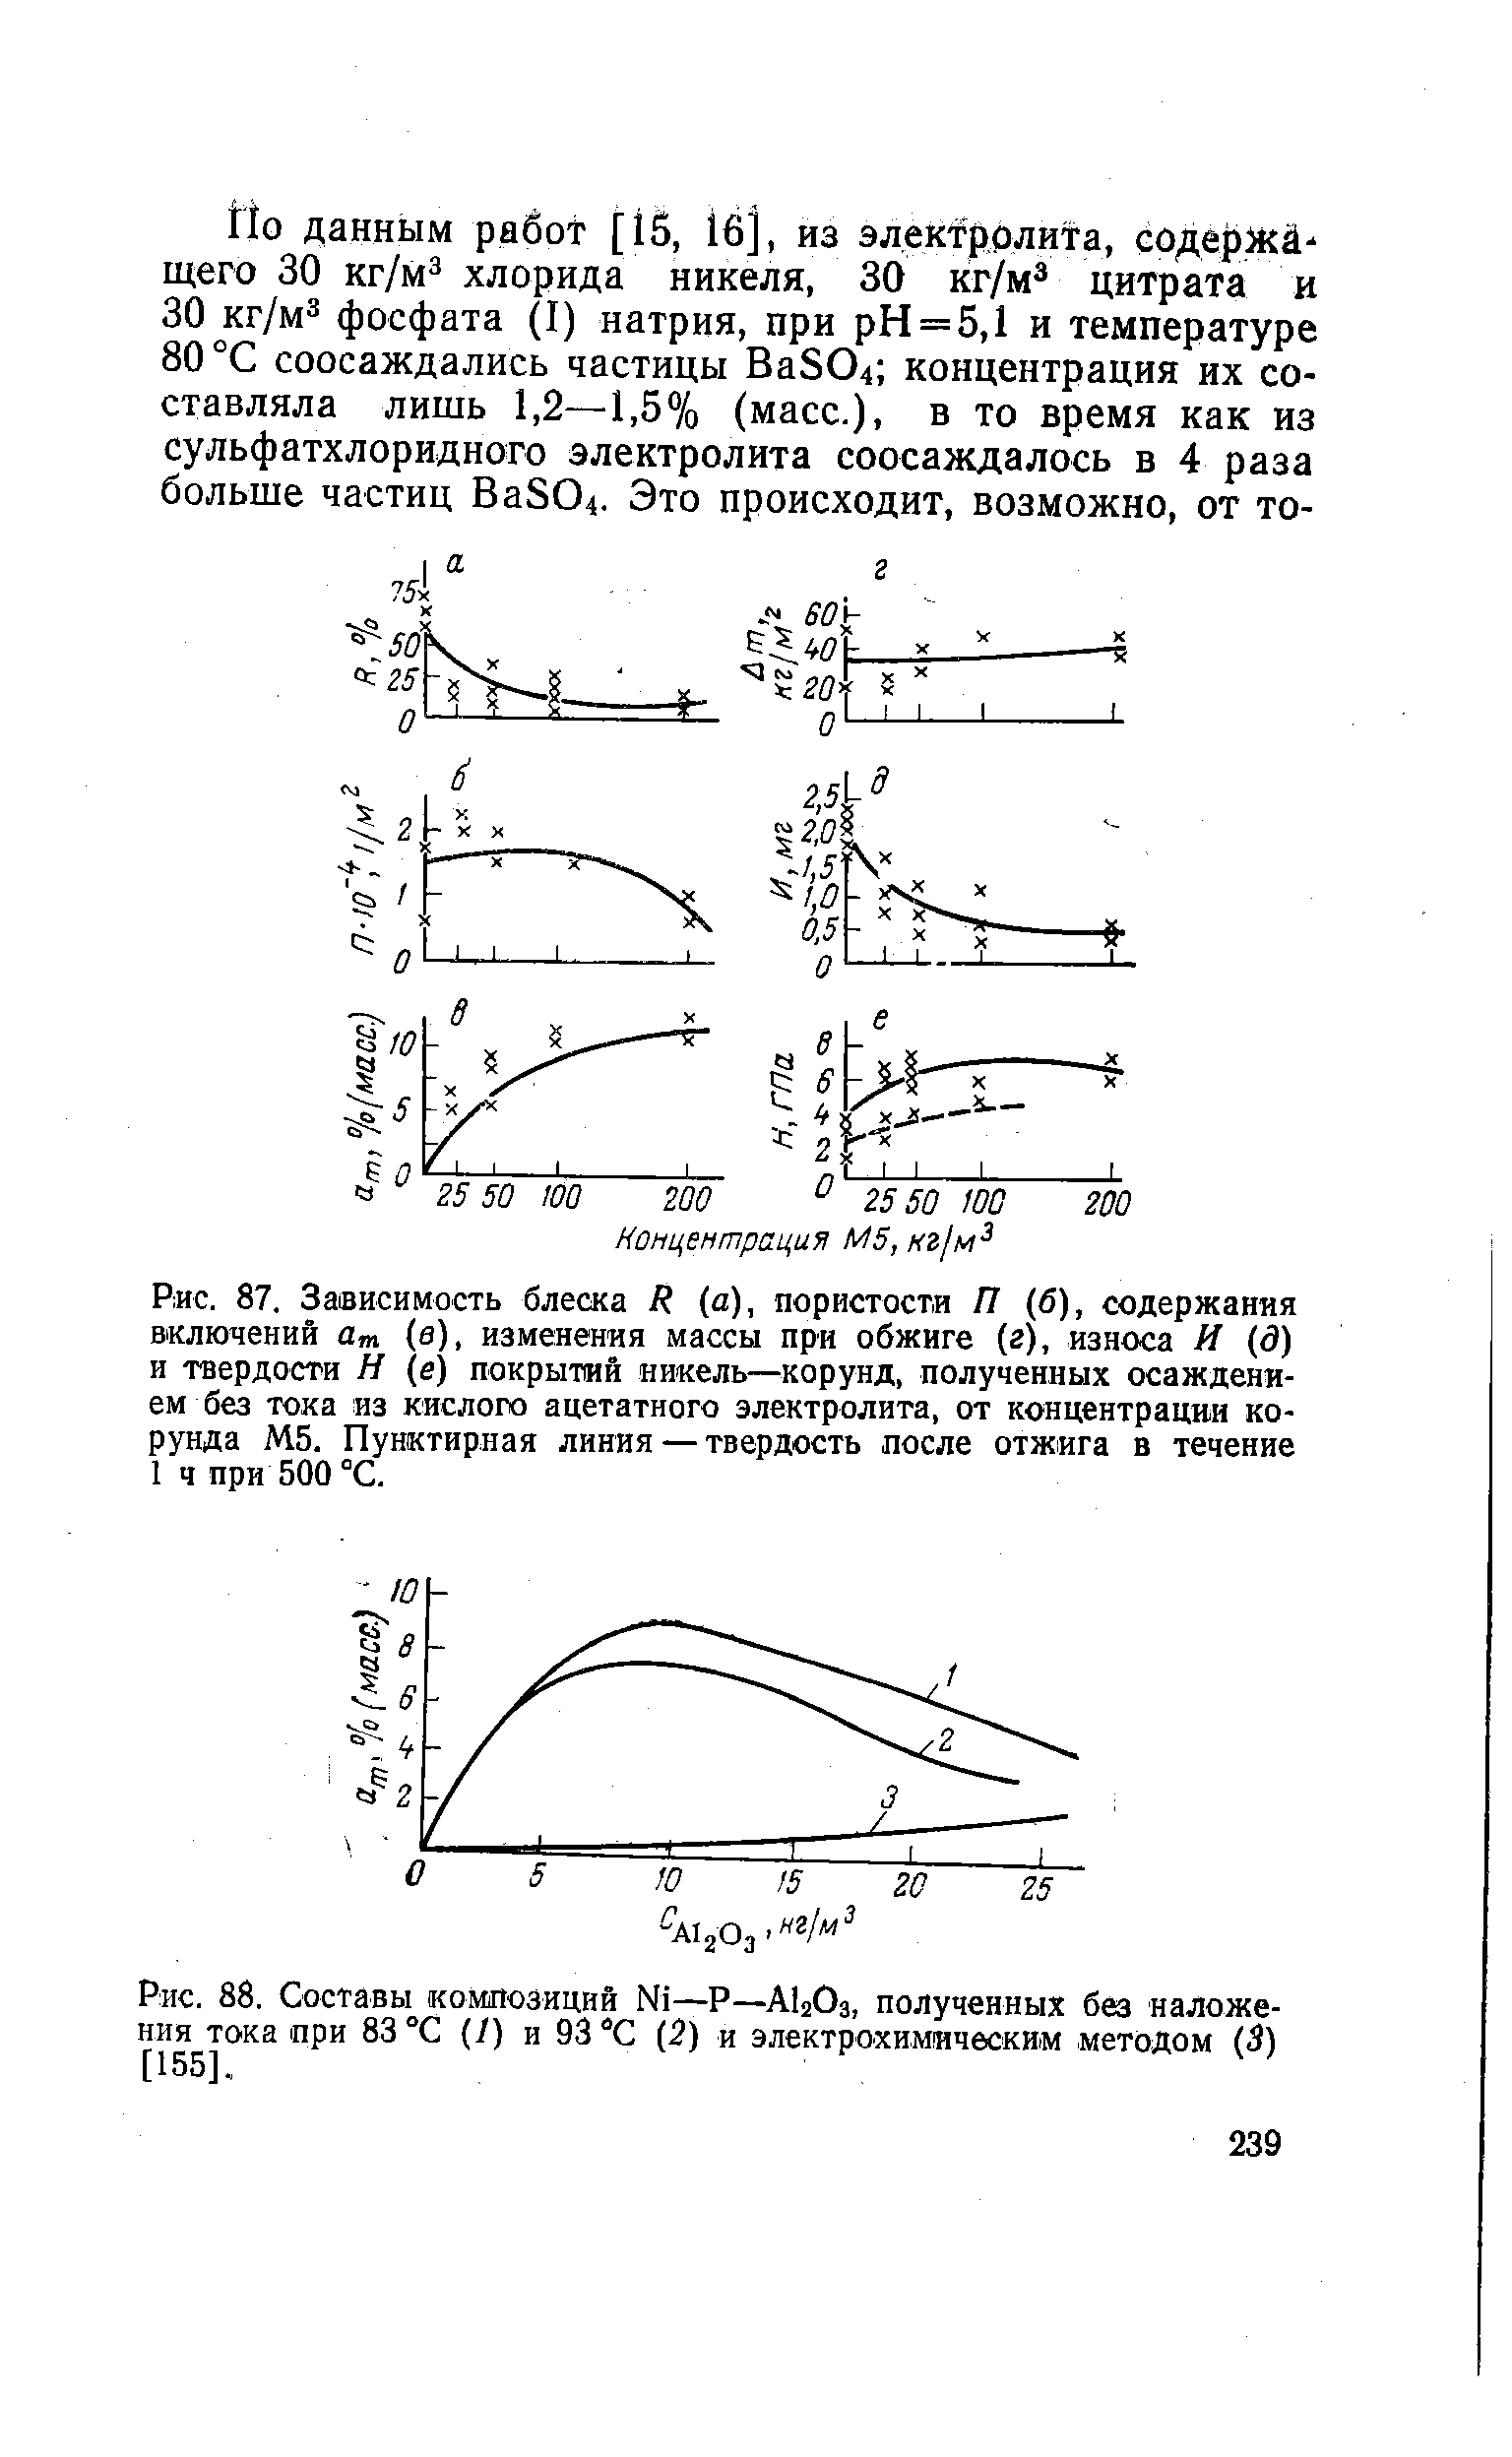 Рис. 88. Составы композиций Ni—Р—AI2O3, полученных без наложения тока при 83 °С (/) и 93 °С (2) и электрохимическим методом (3) [155].
